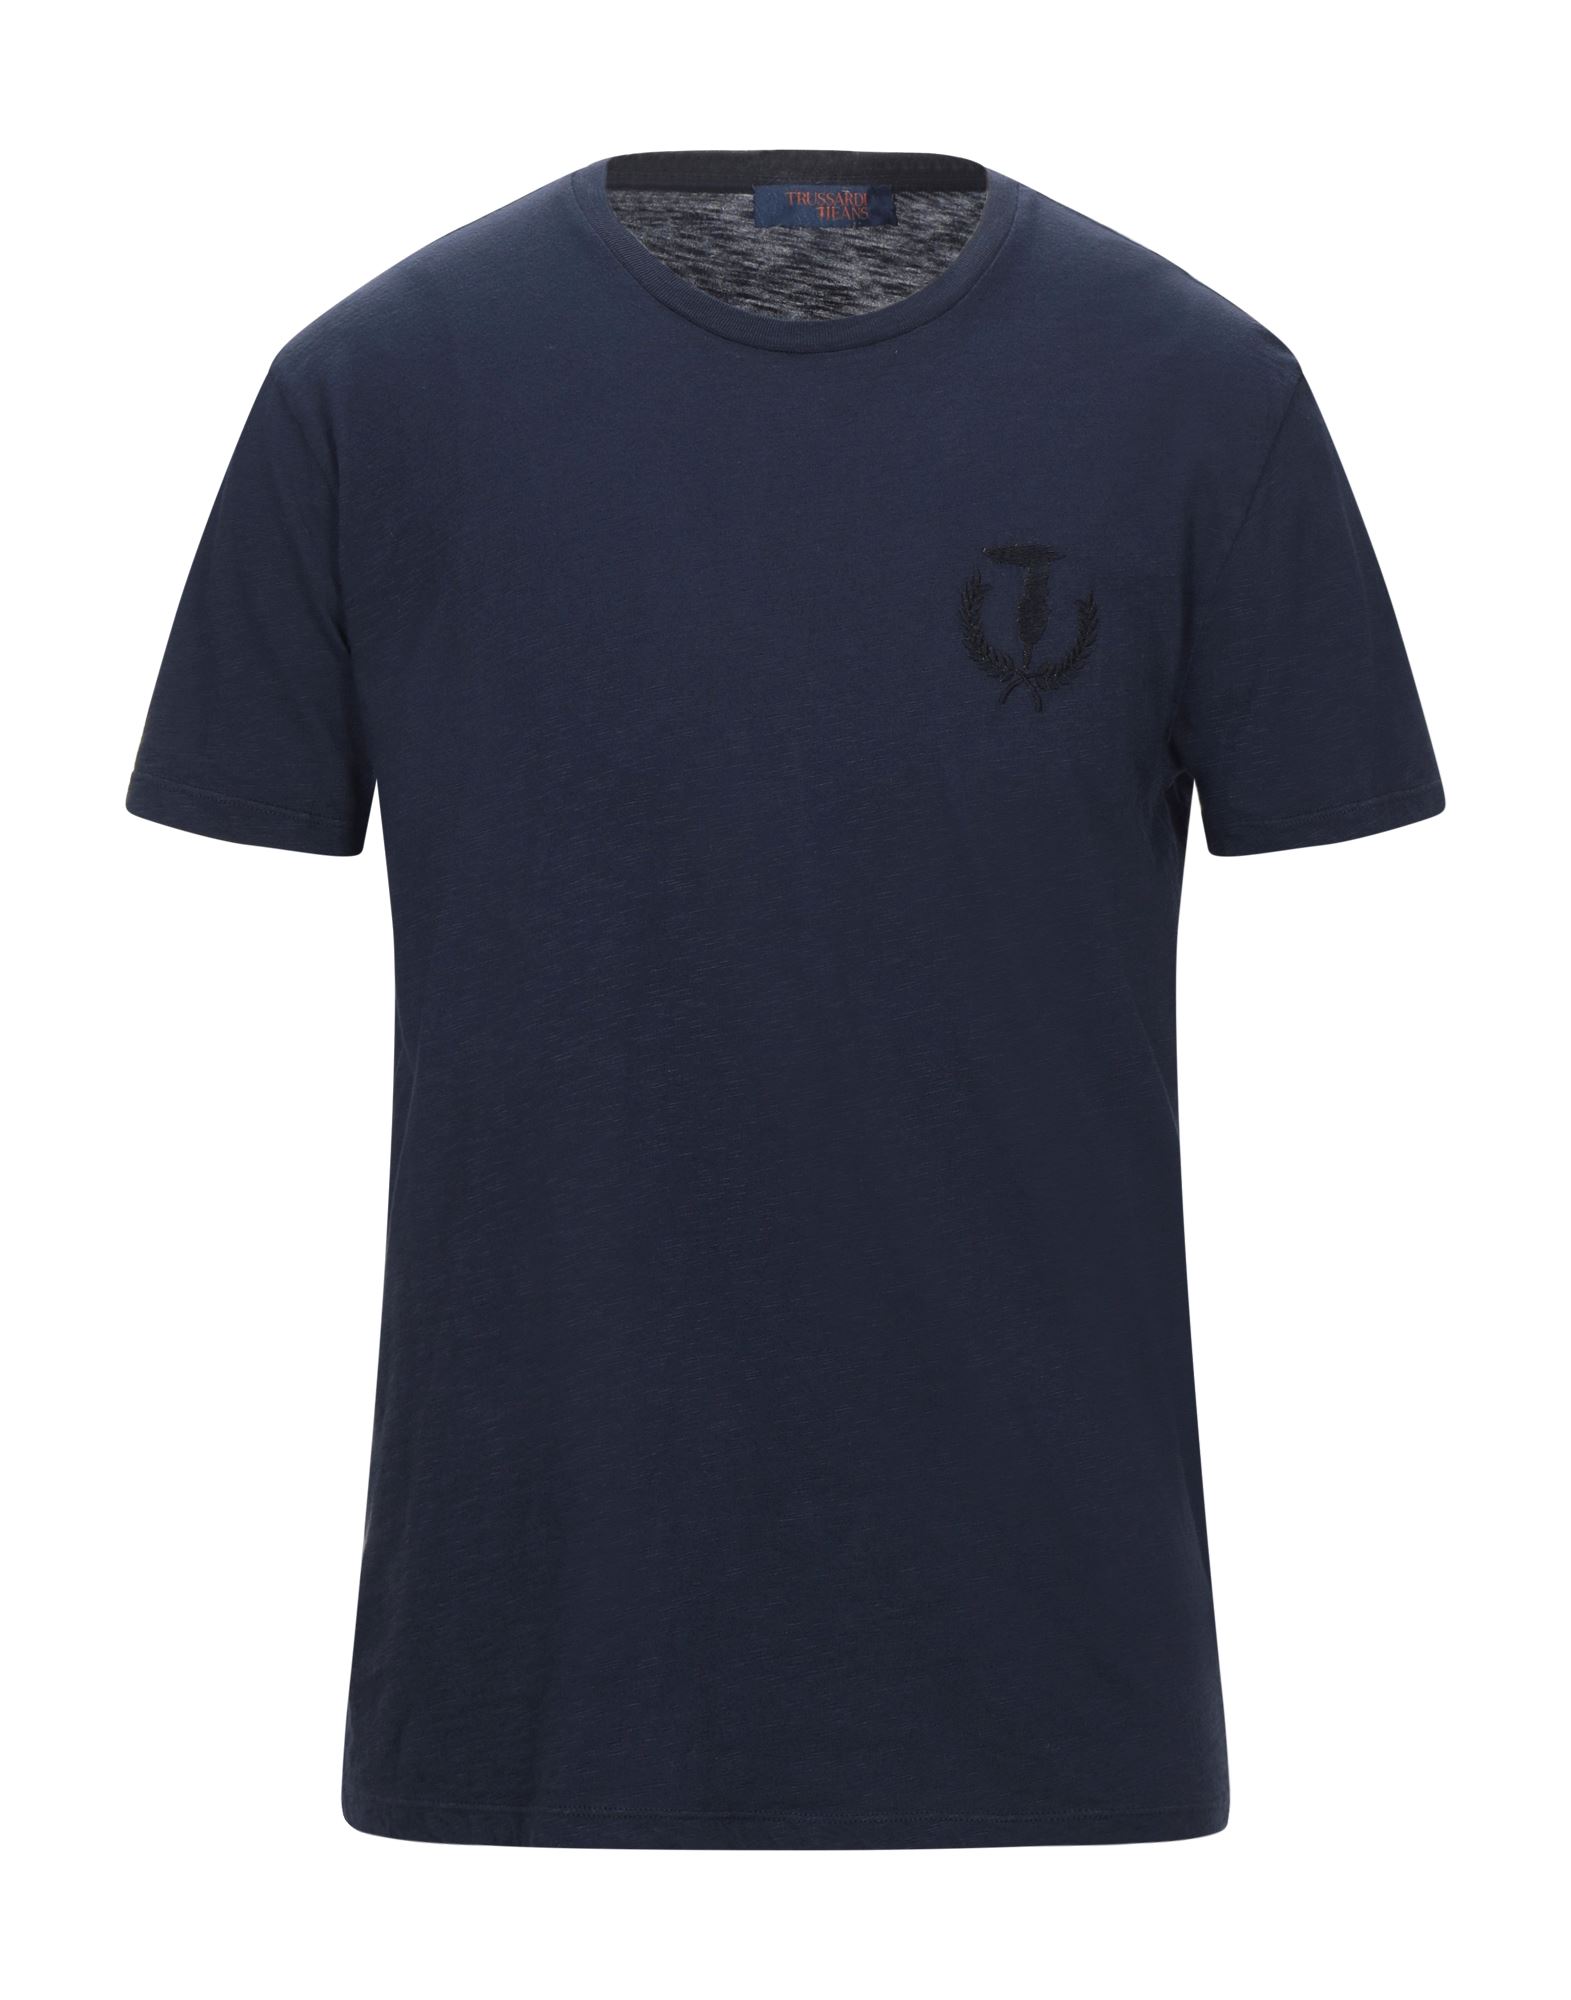 TRUSSARDI JEANS T-shirts - Item 12537164